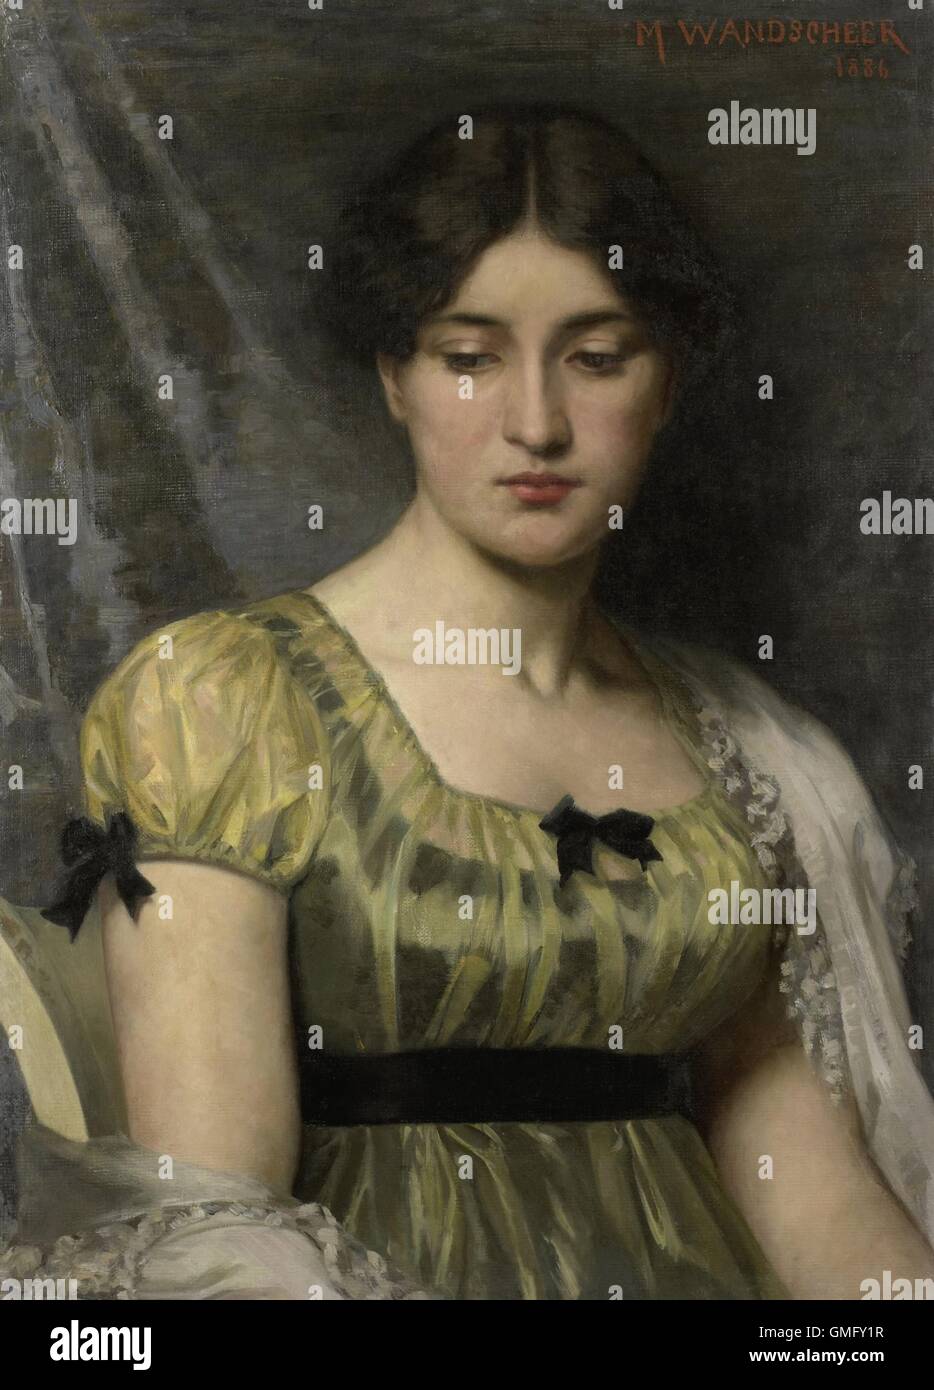 Porträt einer jungen Frau, von Marie Wandscheer, 1886, niederländische Malerei, Öl auf Leinwand. Modell mit niedergeschlagenen Augen, trägt eine hohe Taille grüne Kleid mit kurzen Ärmeln (BSLOC 2016 2 61) Stockfoto